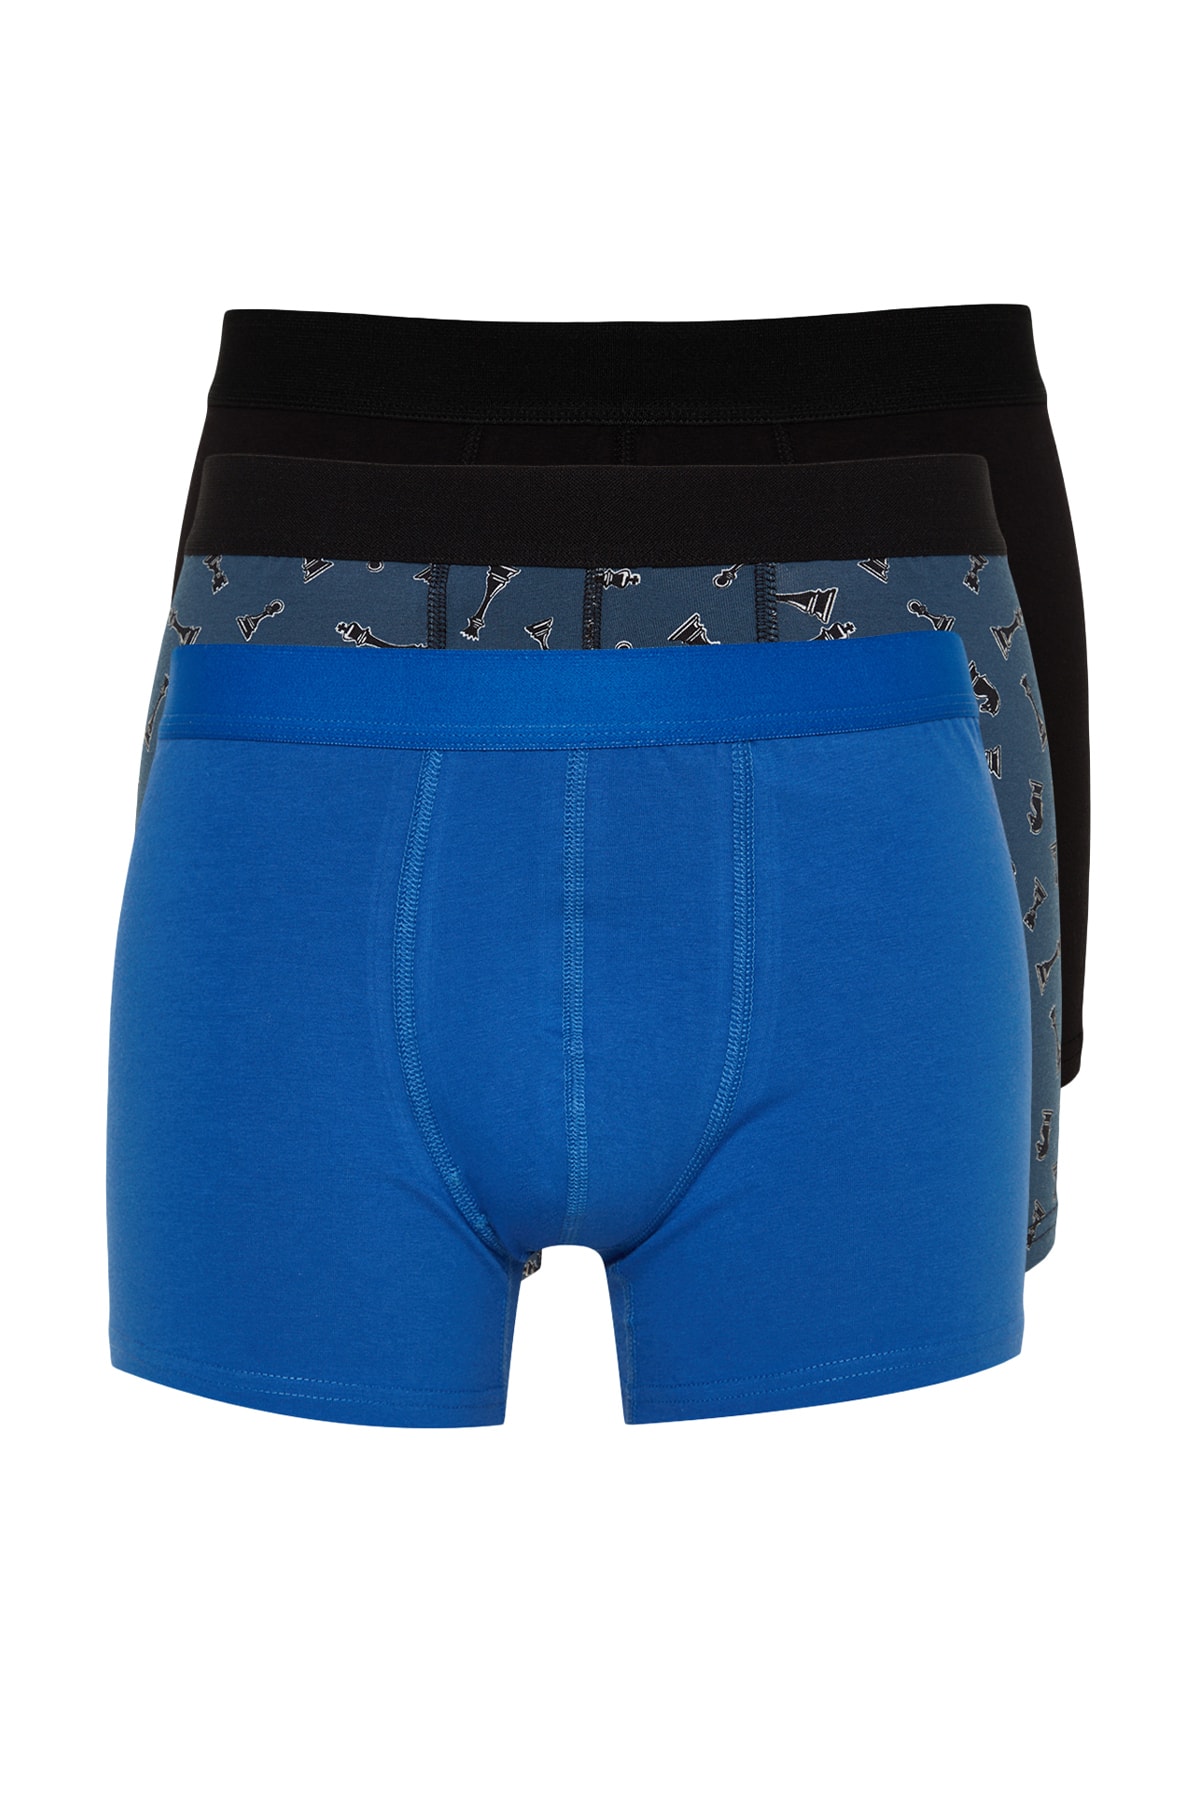 Zena Blue Lace Front Tulle Detail Women's Slip Women's Panties - Trendyol